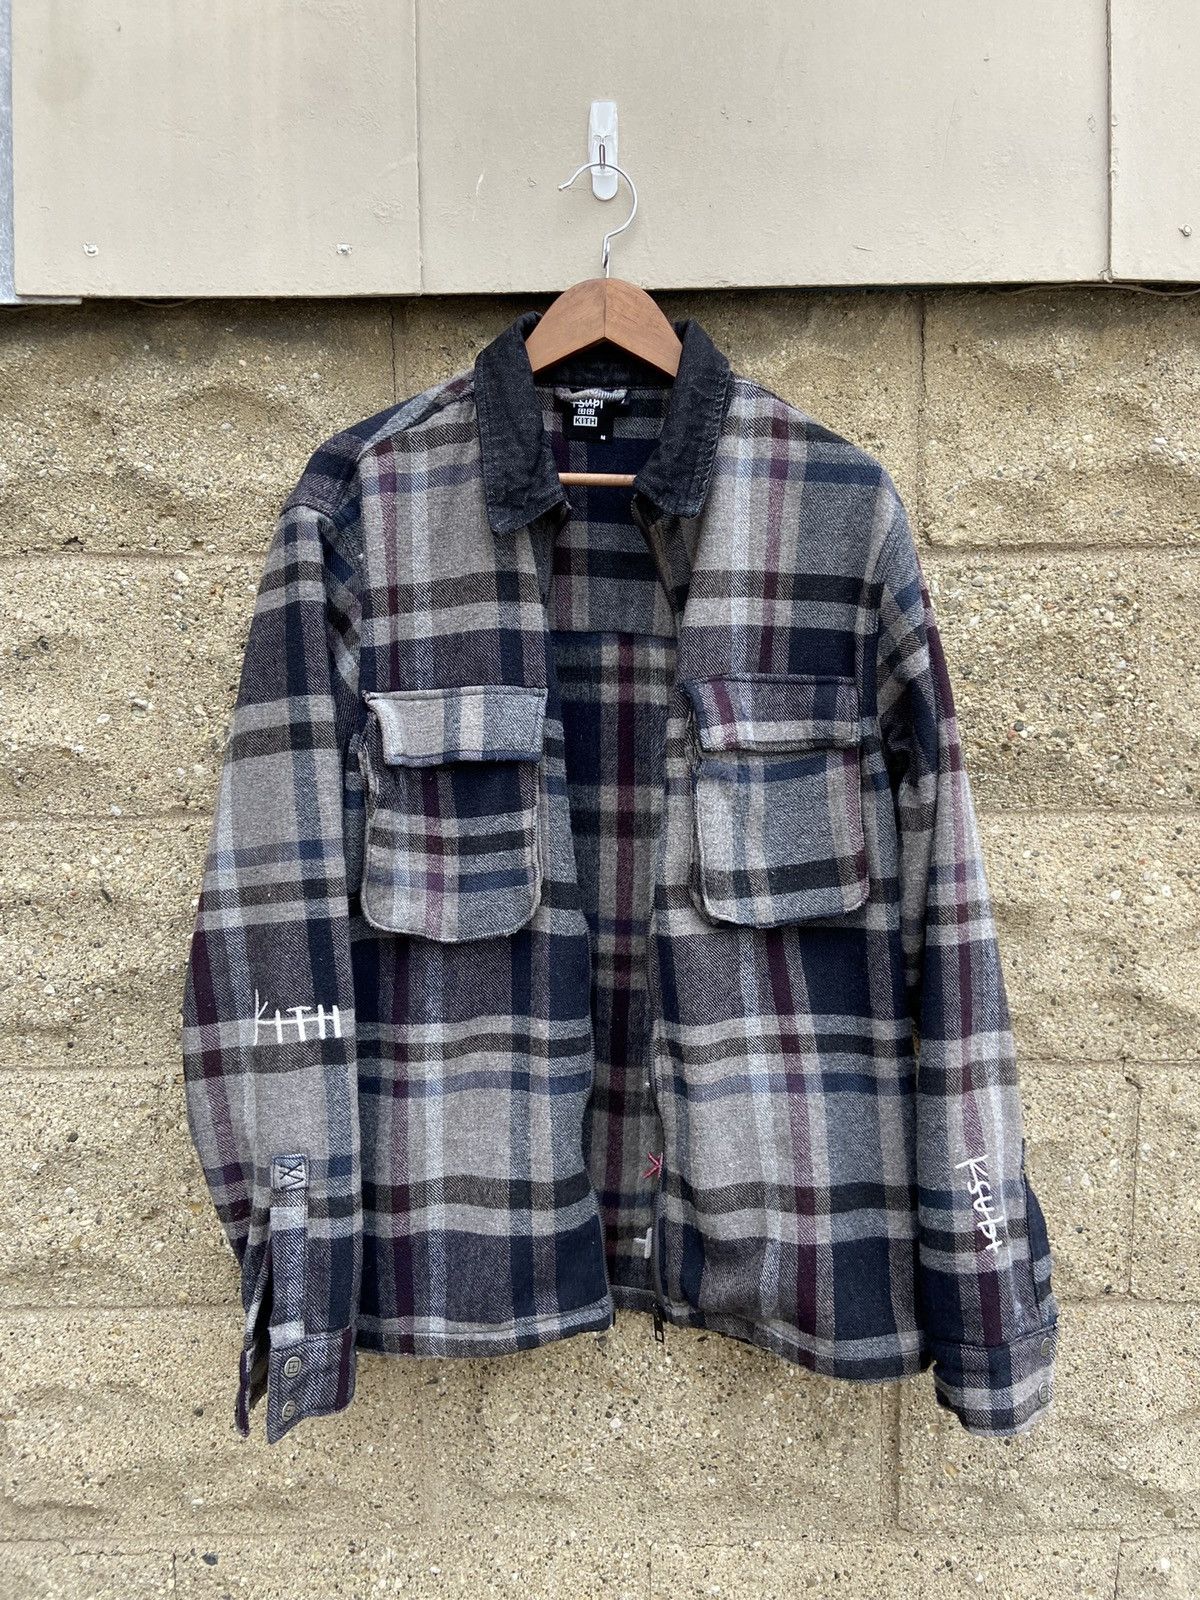 Ksubi Kith Ksubi SS20 Kace Zip Shirt Flannel Jacket - Dark Plaid ...